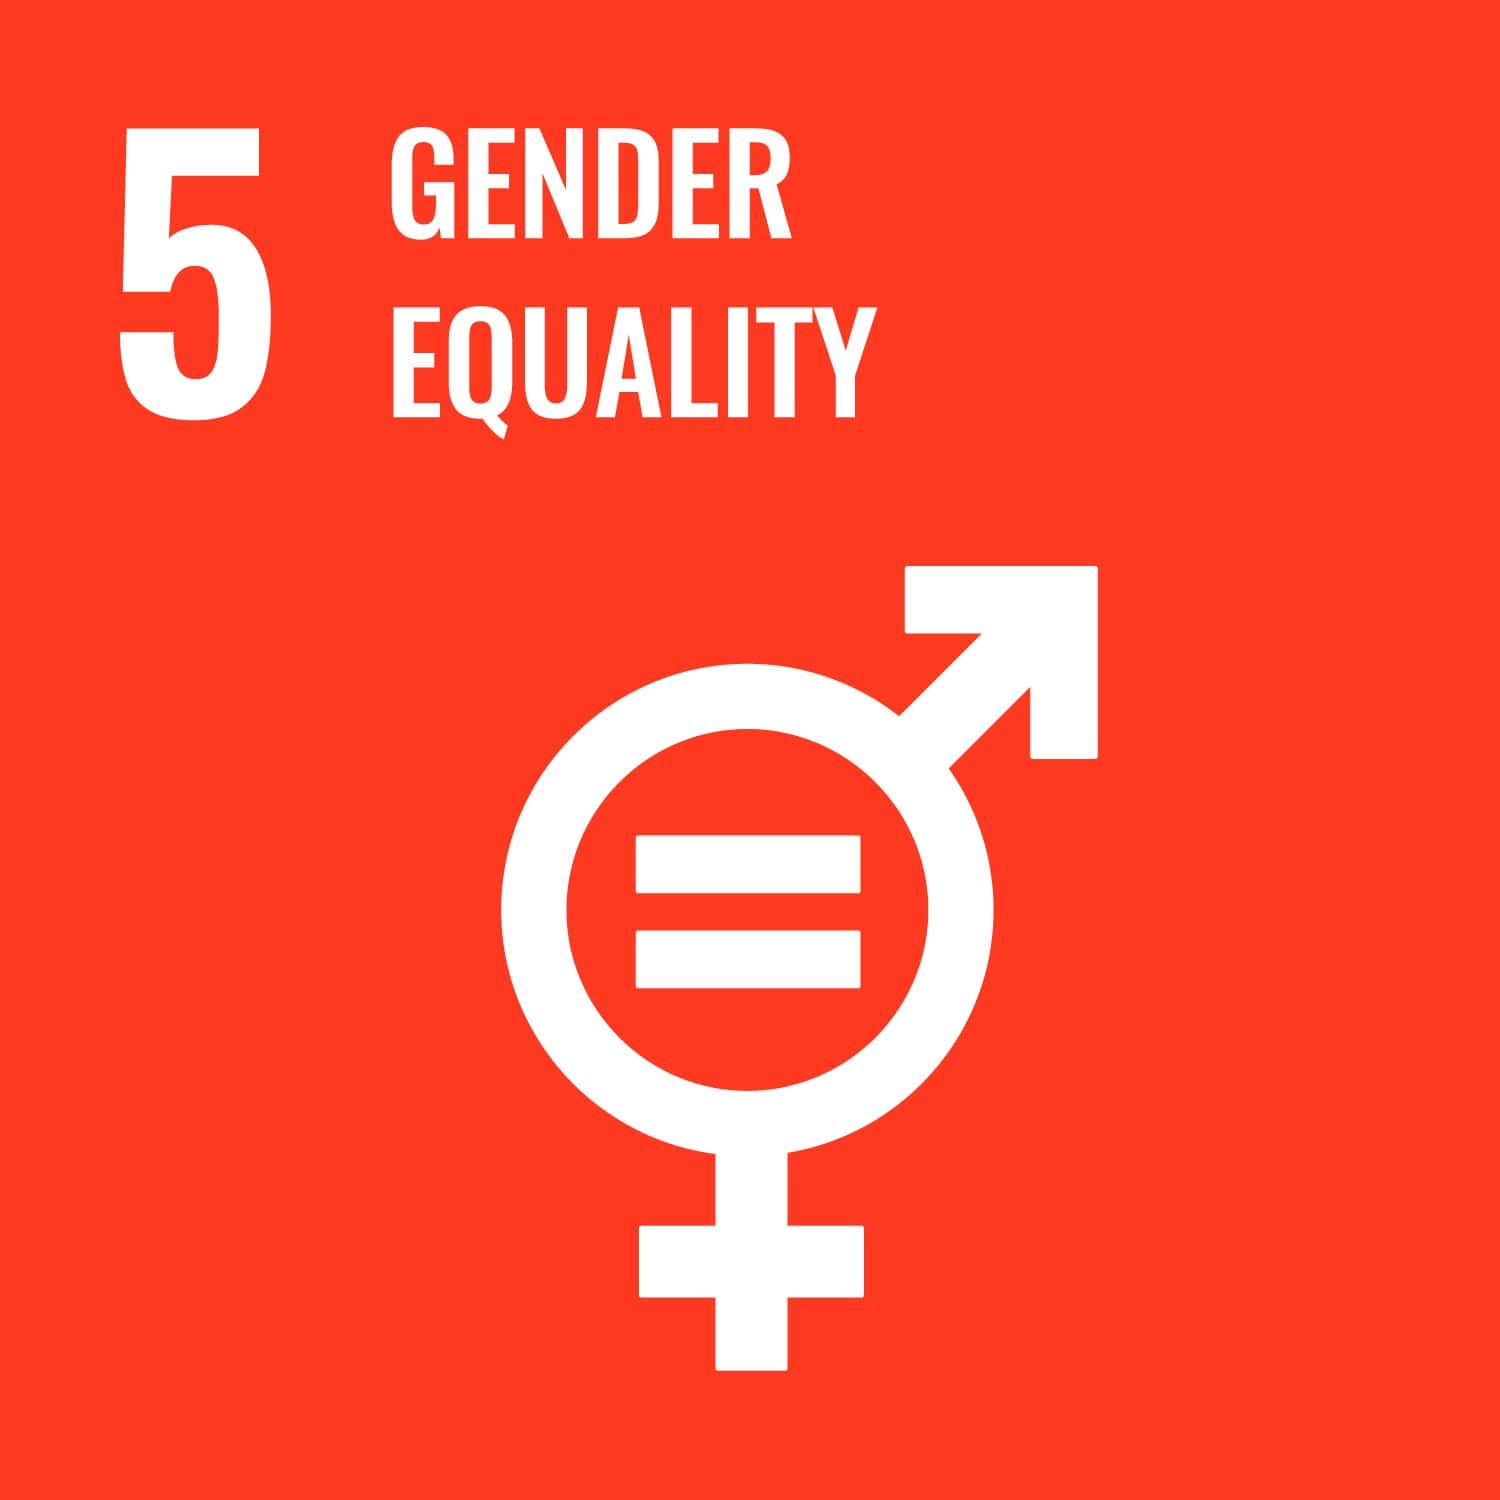 UN logo for gender equality